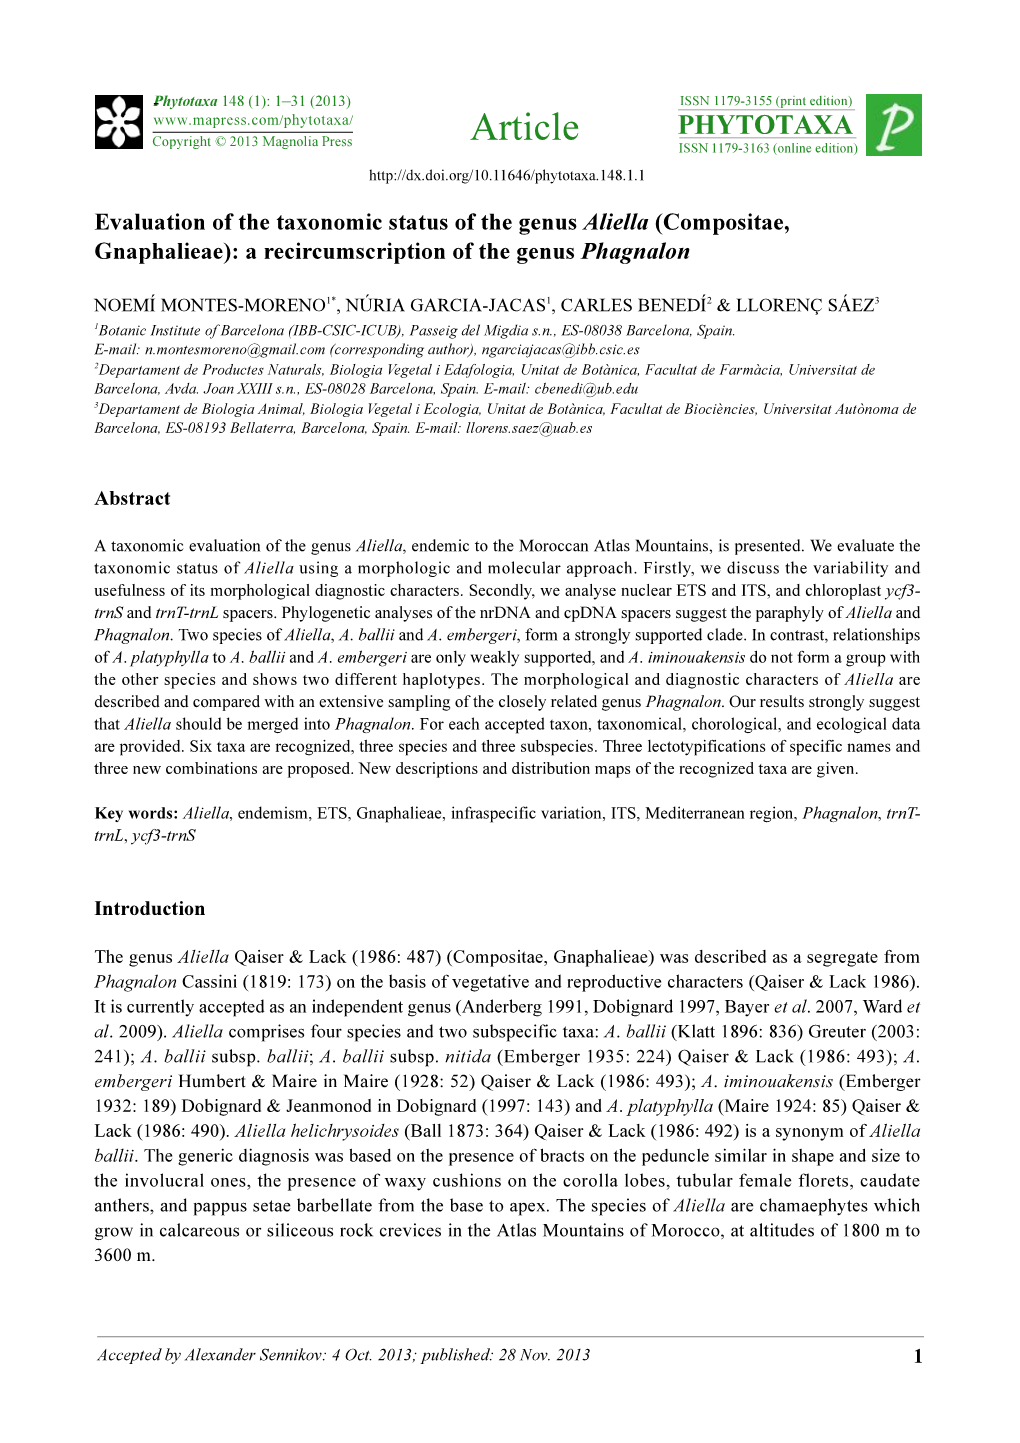 Evaluation of the Taxonomic Status of the Genus Aliella (Compositae, Gnaphalieae): a Recircumscription of the Genus Phagnalon